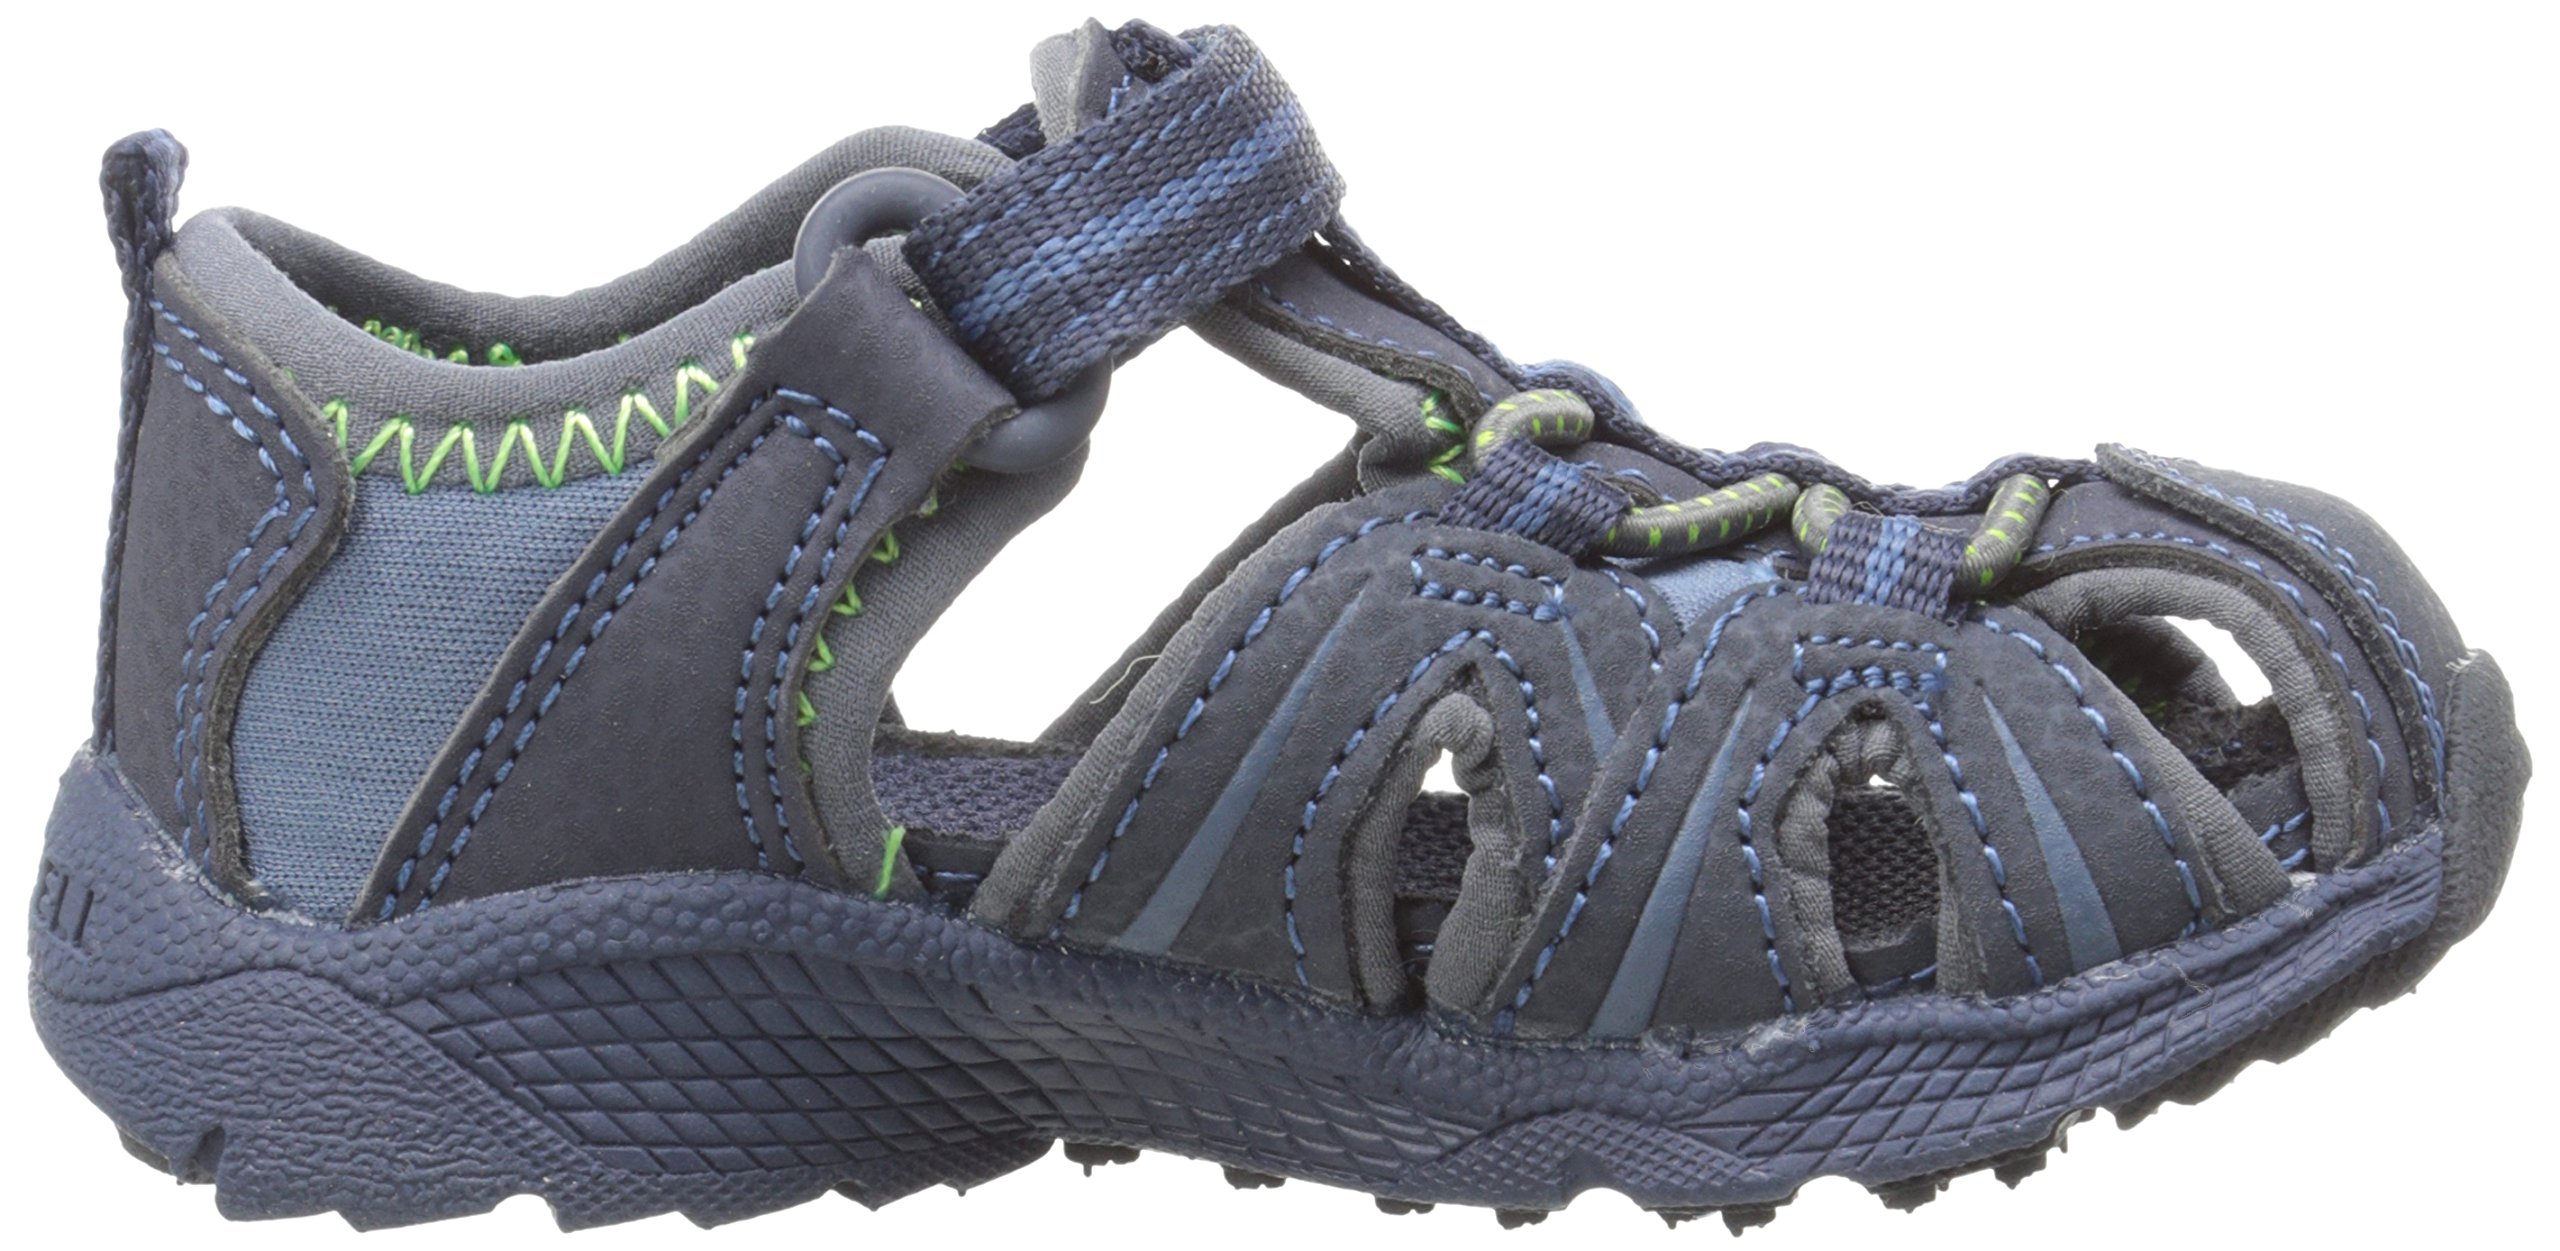 Merrell Unisex-Child Hydro Jr Sport Sandal